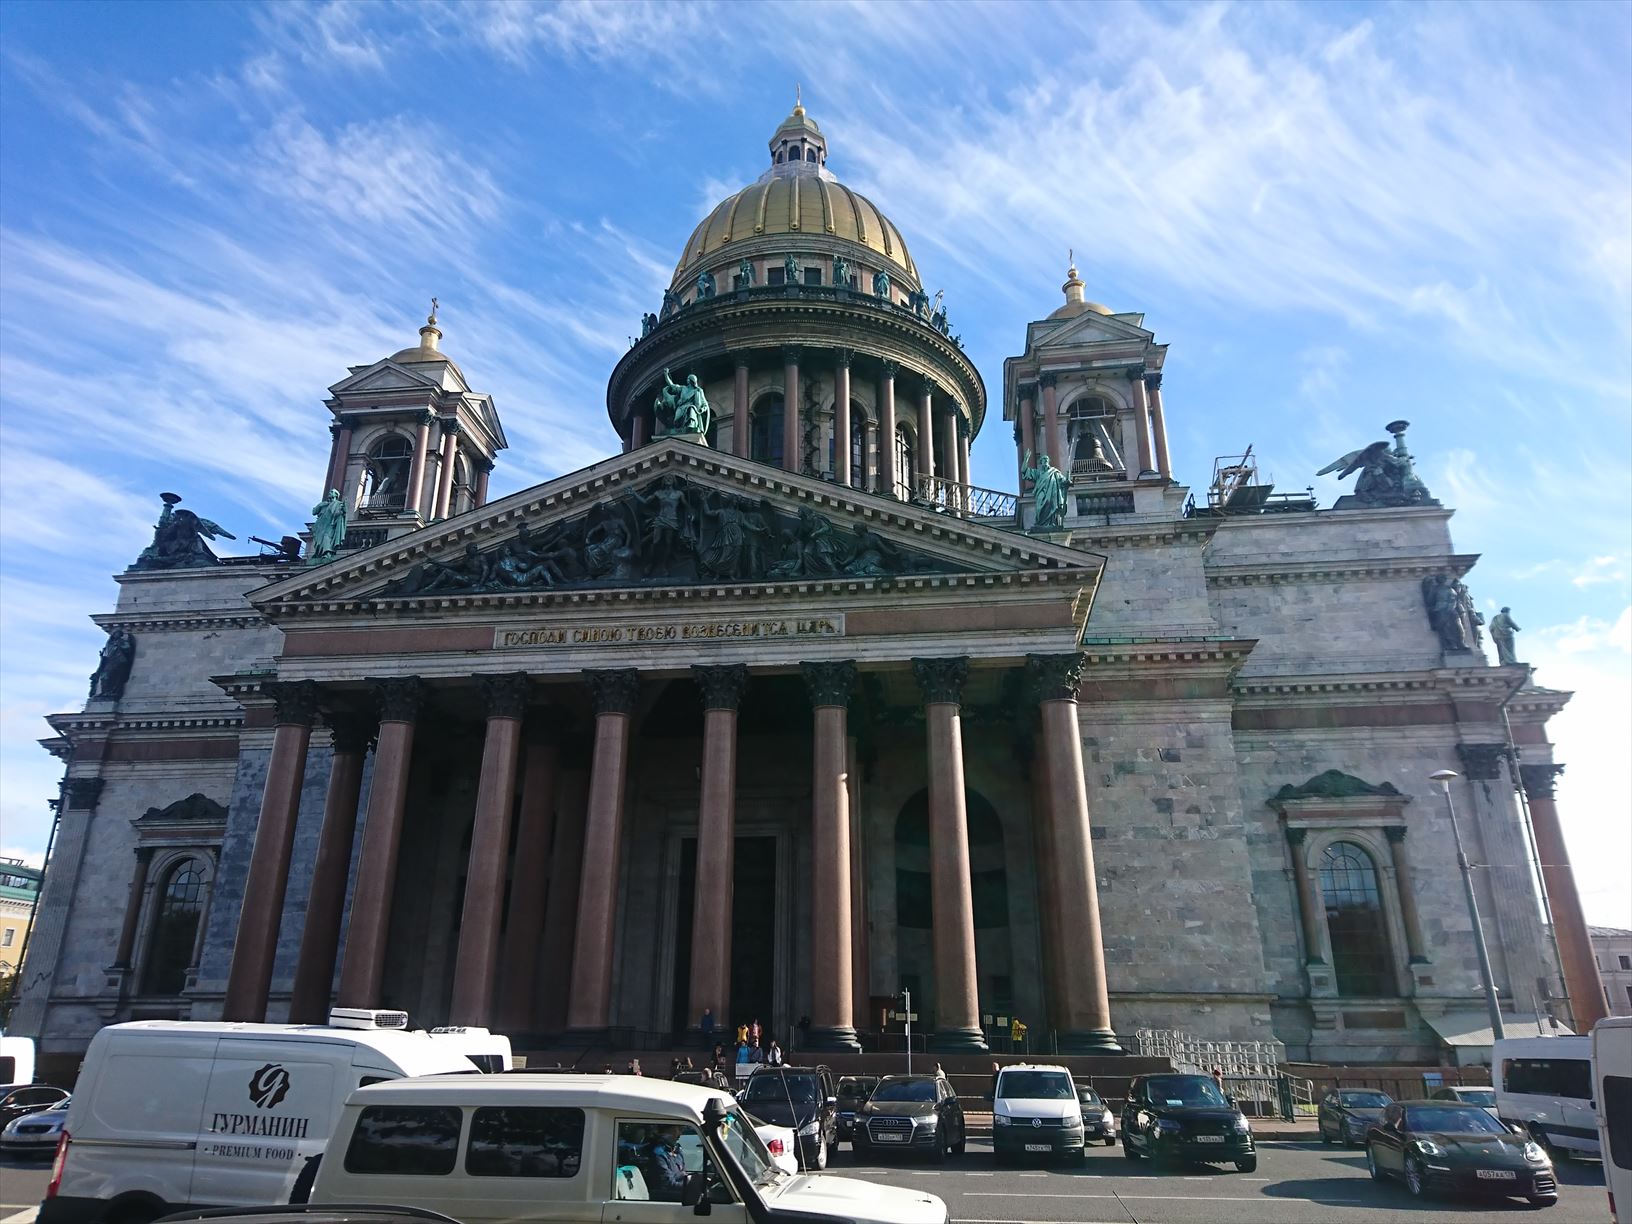 ロシア正教会をテーマとした美術館 聖イサアク大聖堂 Worldtravelog 海外生活 旅行日記